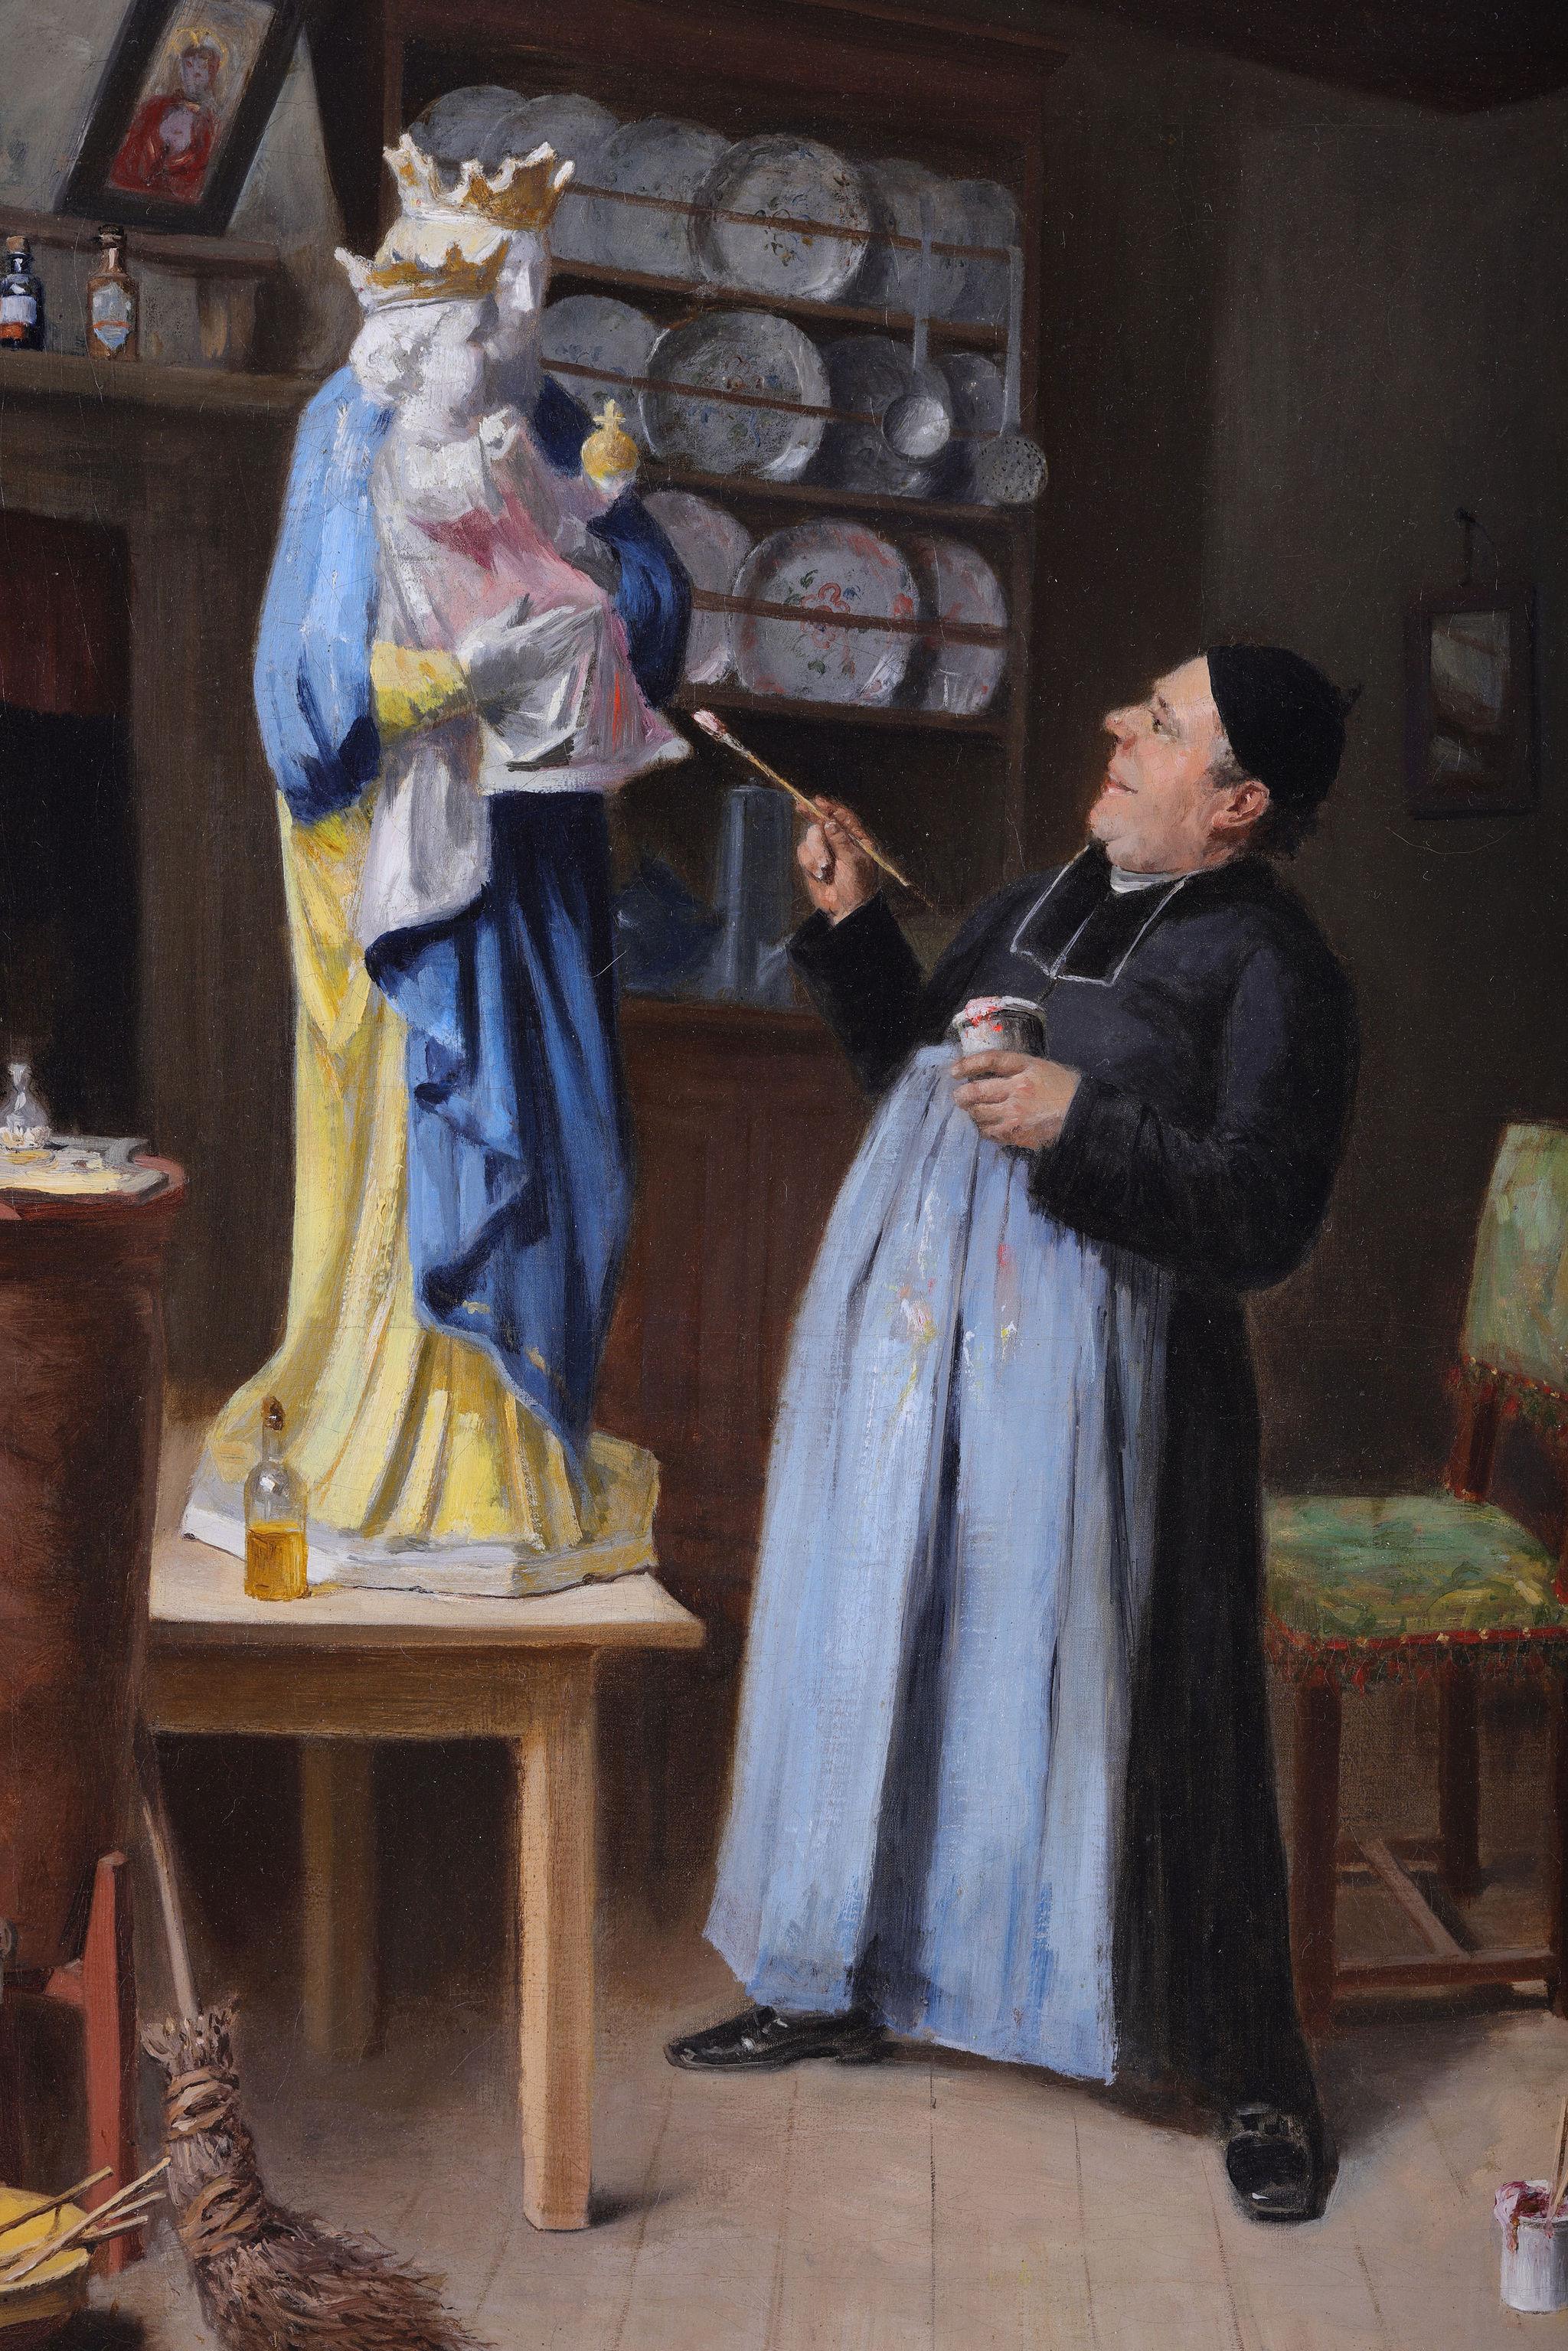 Ce tableau d'Henri Brispot se distingue des nombreuses œuvres qu'il a peintes. Elle a été vendue à New York pour 20 000 dollars et constitue un merveilleux exemple de sa nature satirique, démontrée par son merveilleux talent. 
La bouteille d'alcool,